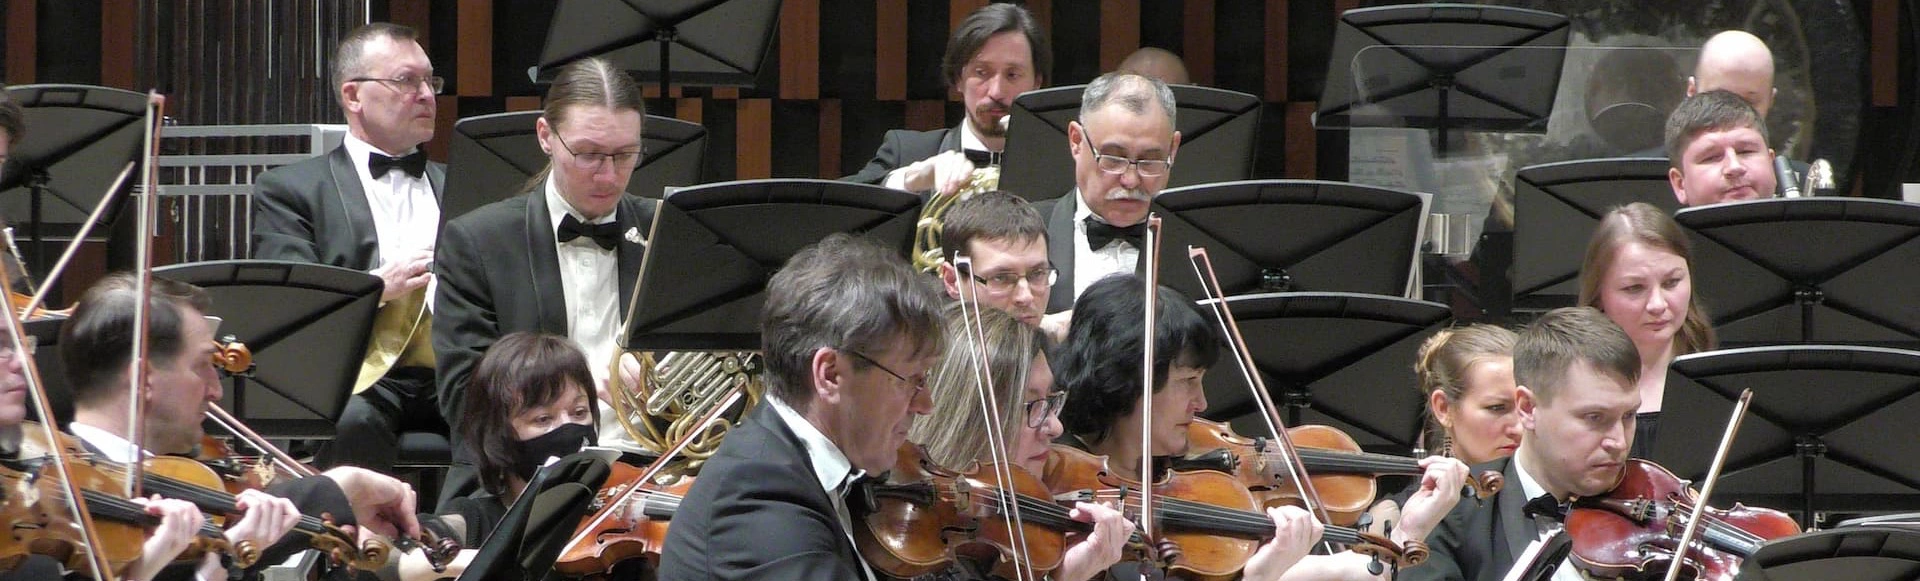 Музыкальный концерт "Беседа. Игра. Прощание" состоится в Большом зале филармонии имени Шостаковича